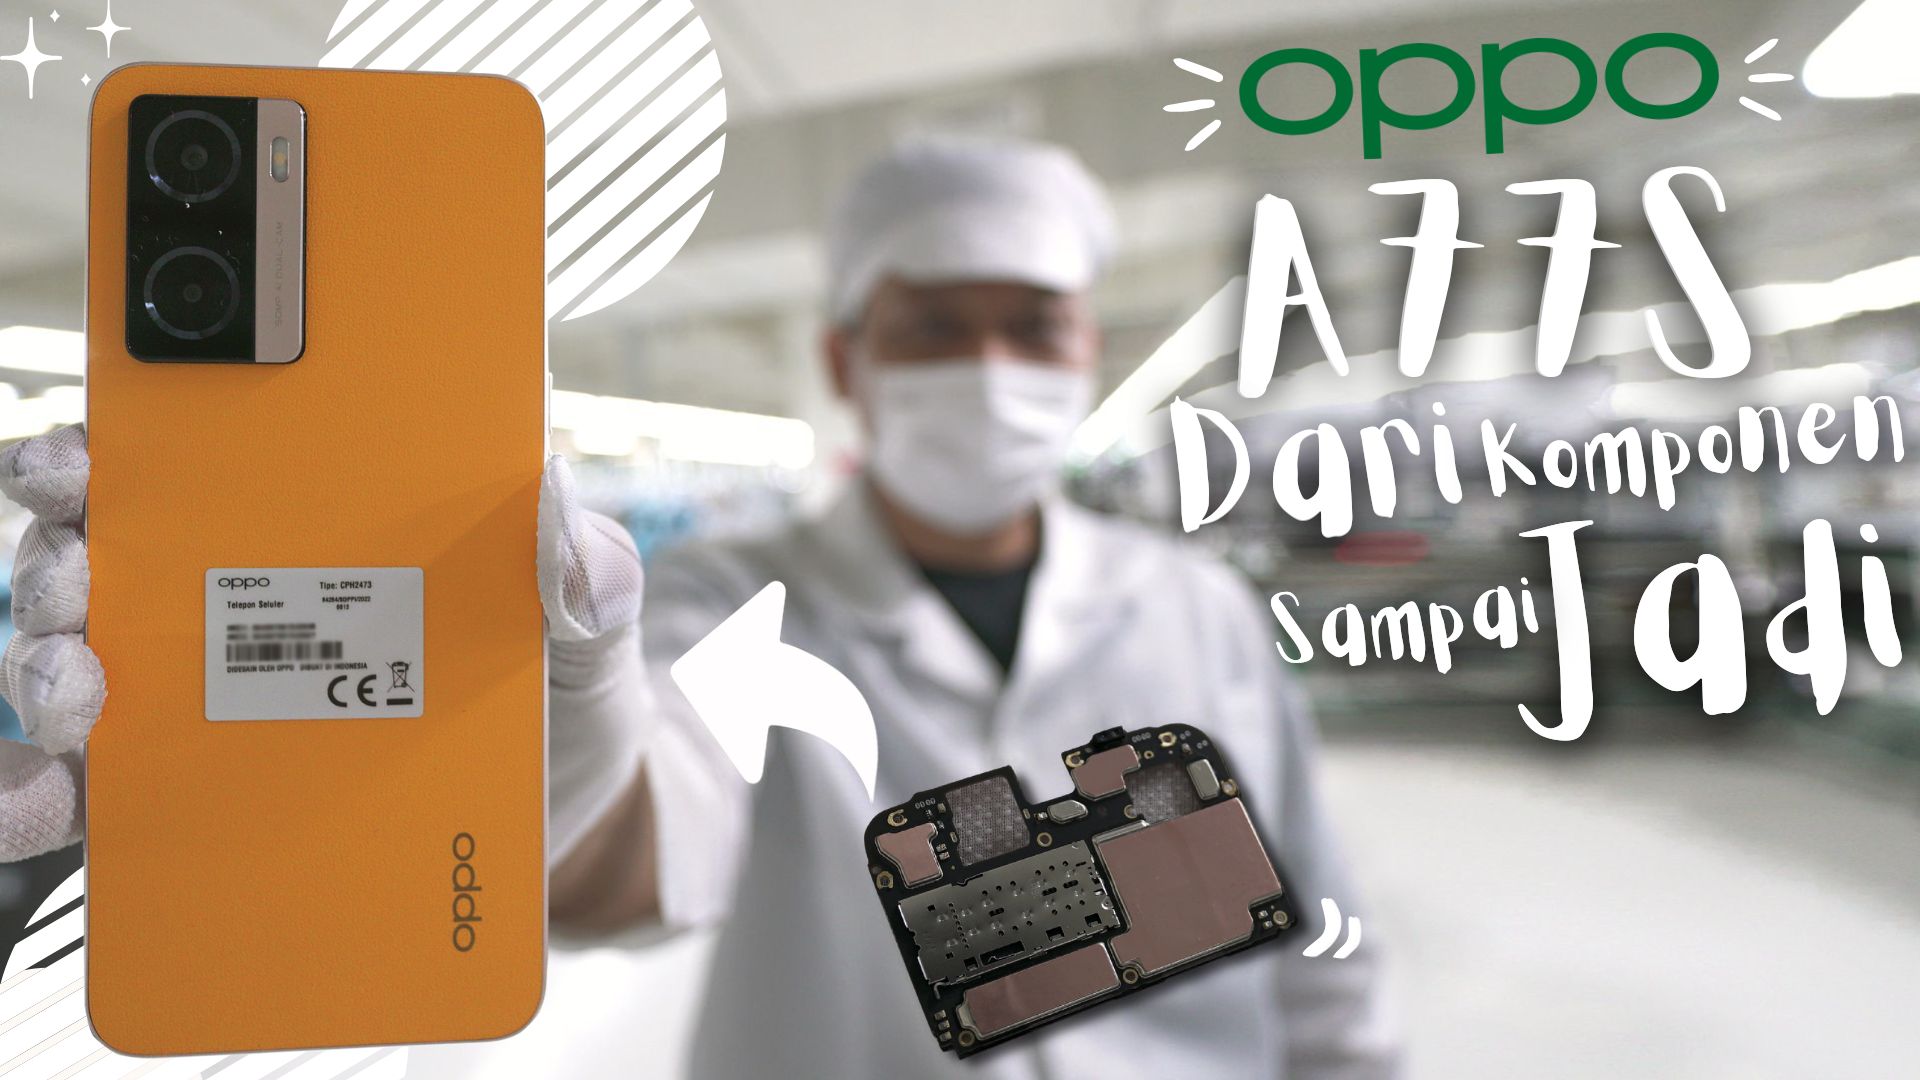 Tiap 10 Detik Keluar Hape Baru, Begini Proses Pembuatan Oppo A77s di Pabrik Baru Oppo